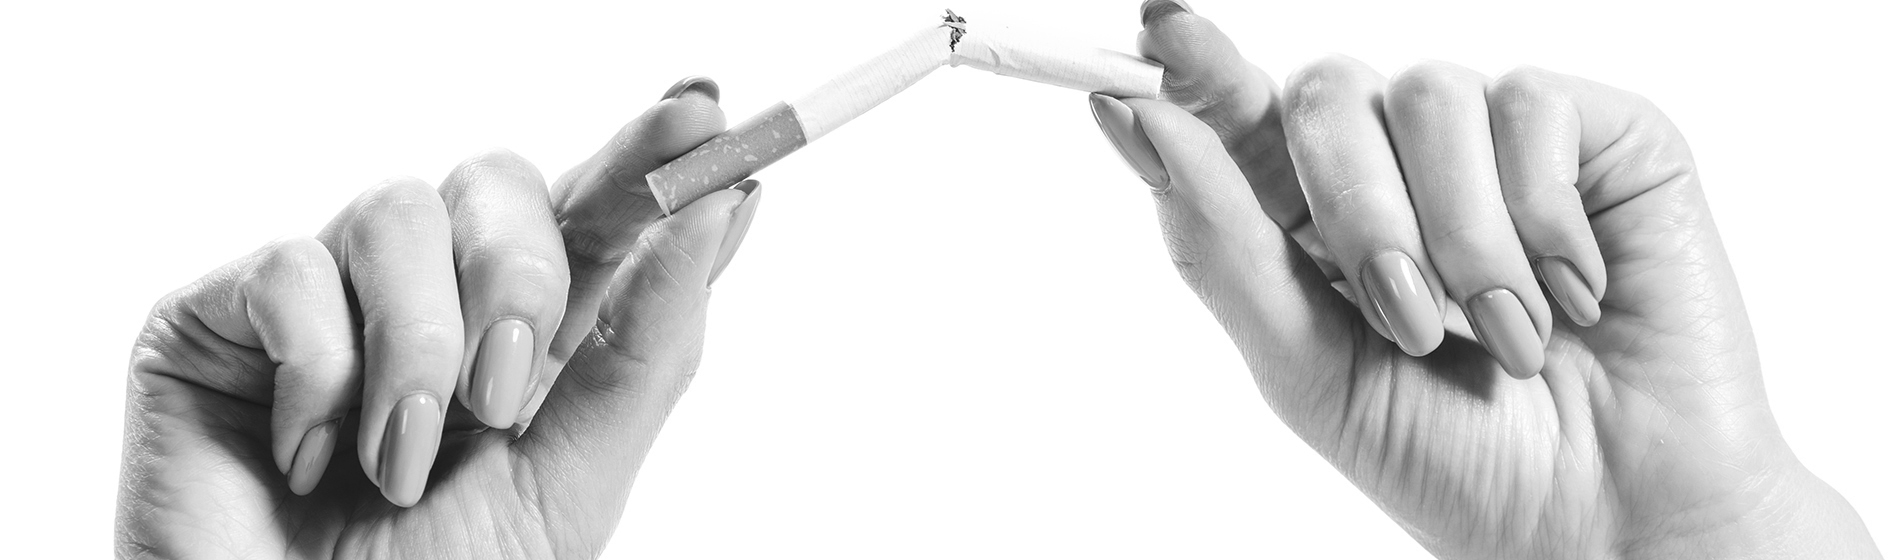 La méthode simple pour en finir avec la cigarette